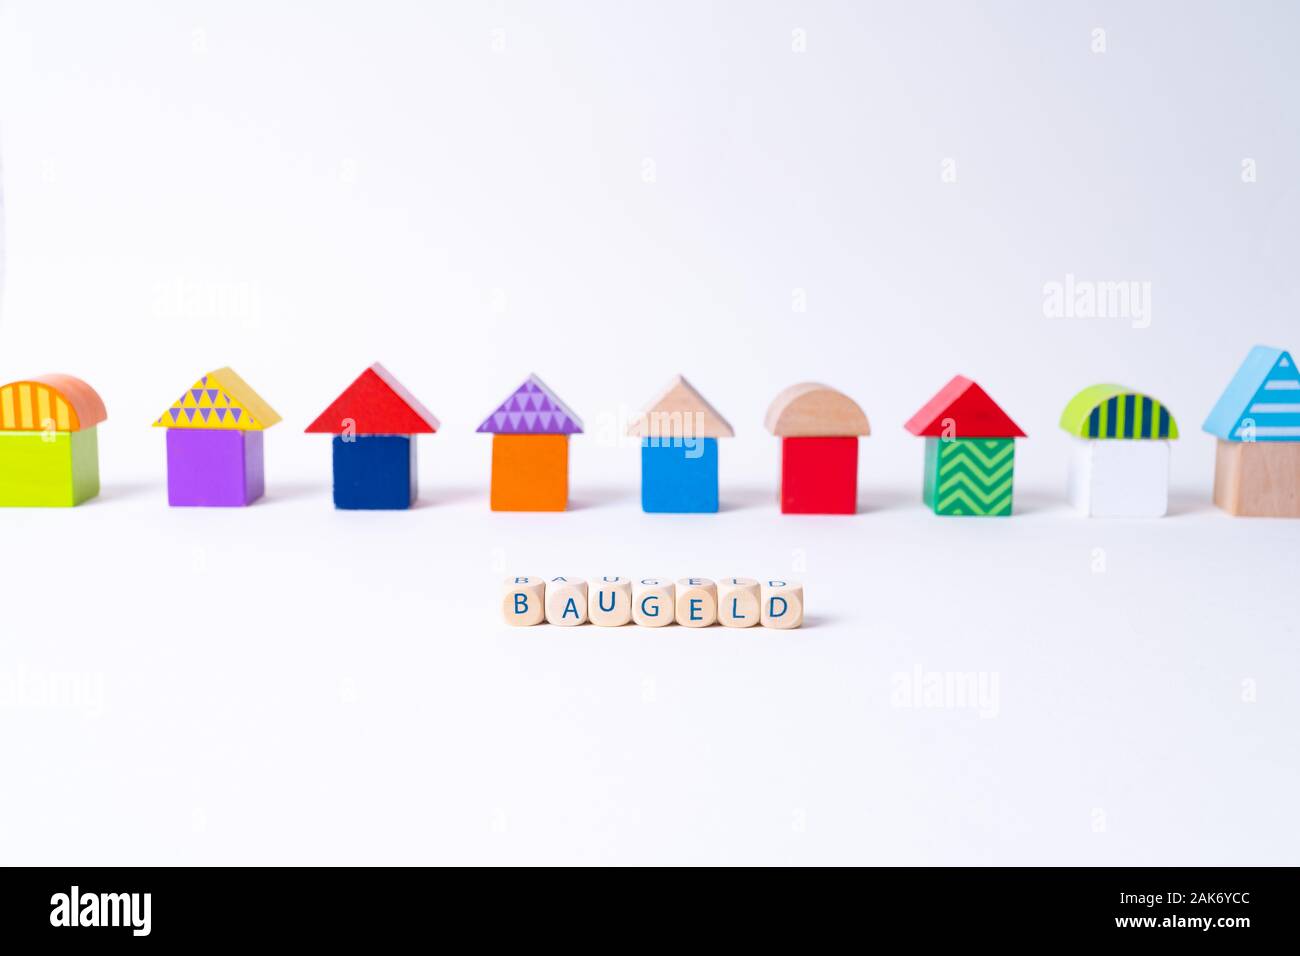 Glaçons avec des lettres pour dire 'Baugeld', le mot allemand pour de l'argent pour construire une maison en face d'une rangée de maisons construites de blocs de jouets Jouets colorés Banque D'Images